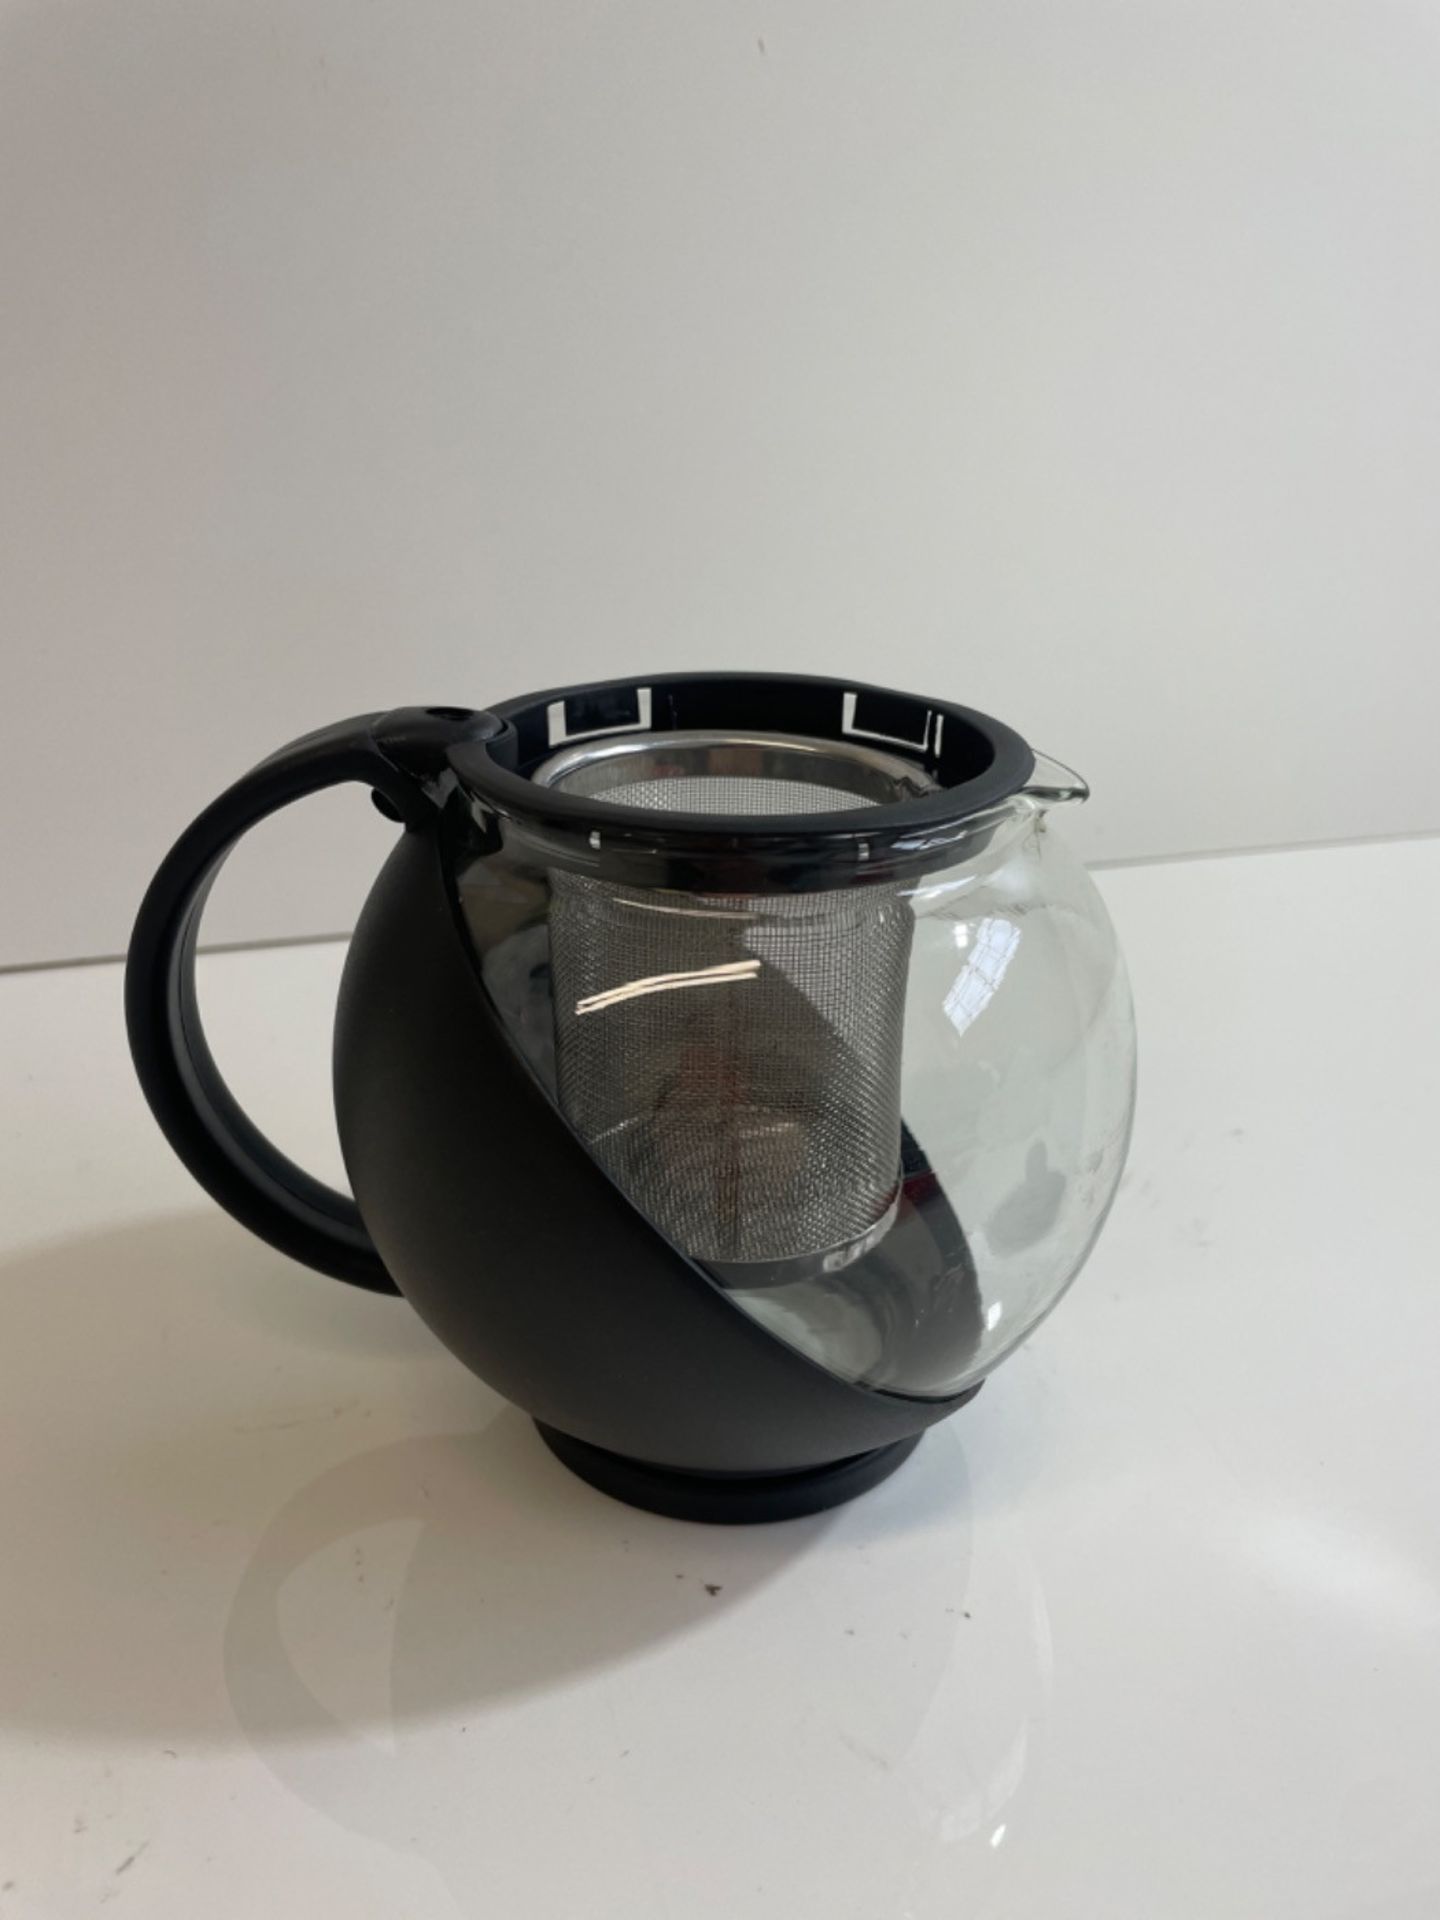 Caf? Ole CMP-07TP Everyday Round Tea Pot Infuser Basket Glass Teapot Loose Leaf 700 ml/24 oz, Blac - Image 2 of 3